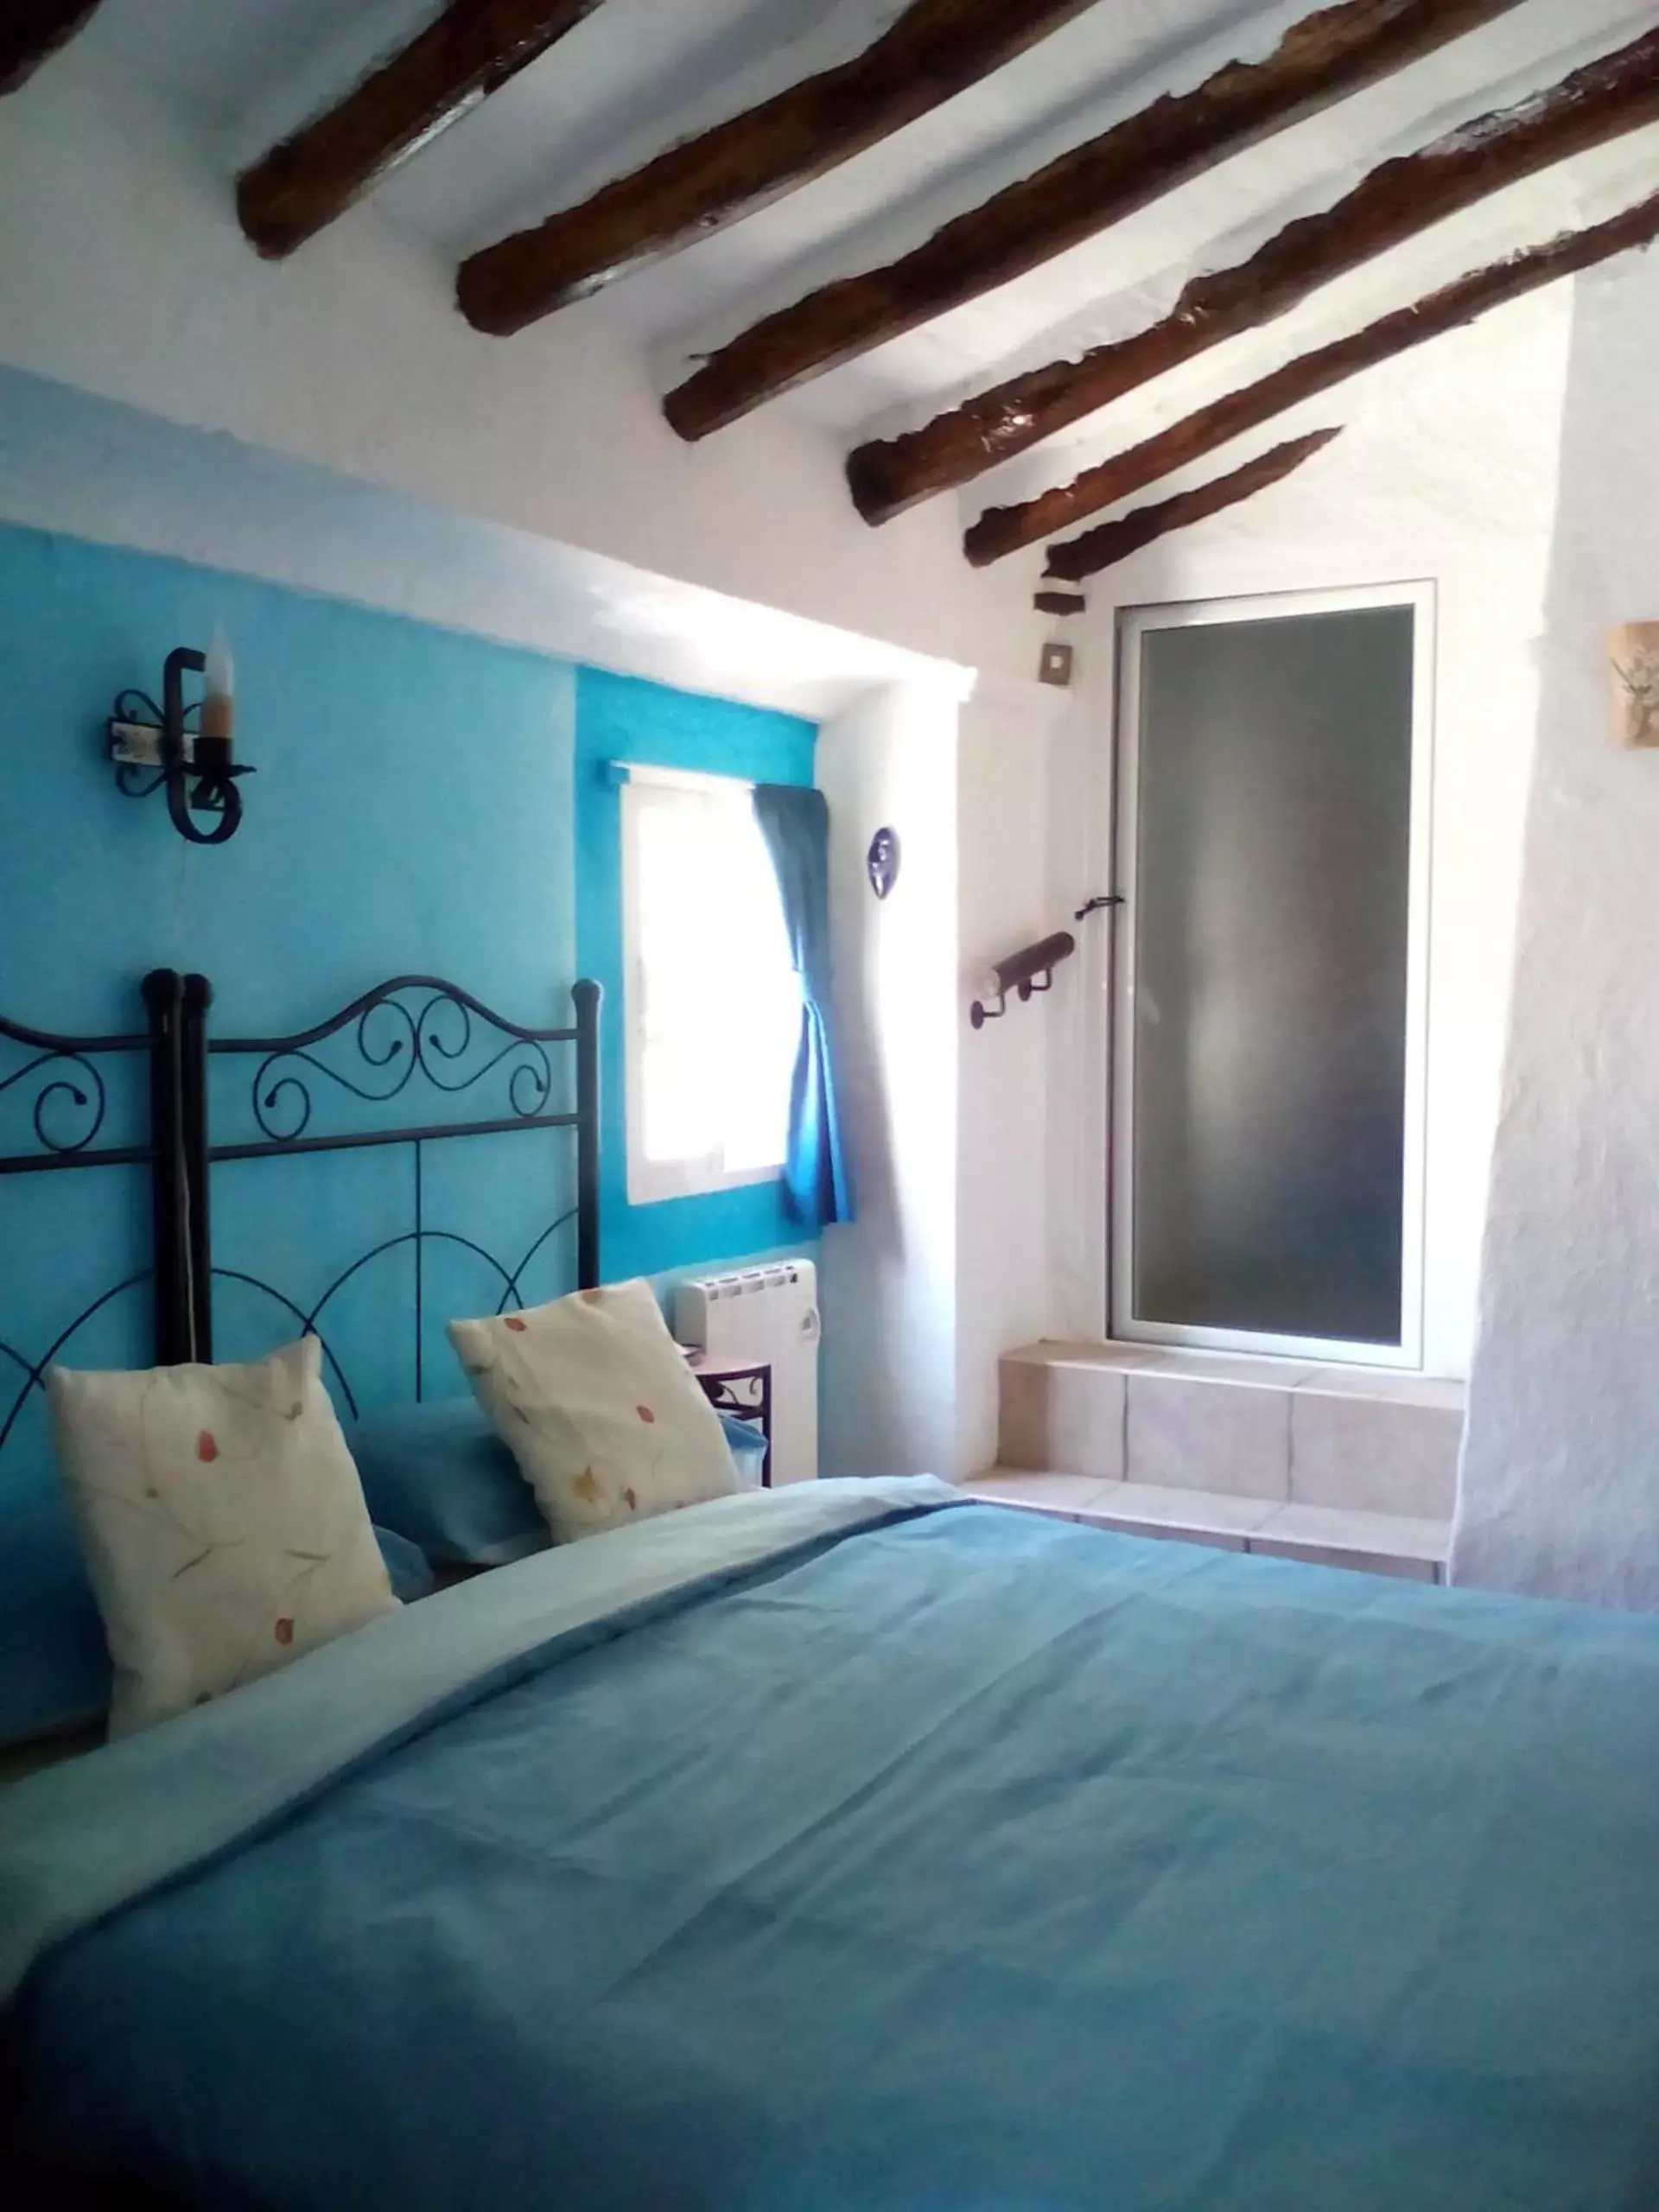 Bed, Room Photo in Casa La Rosa